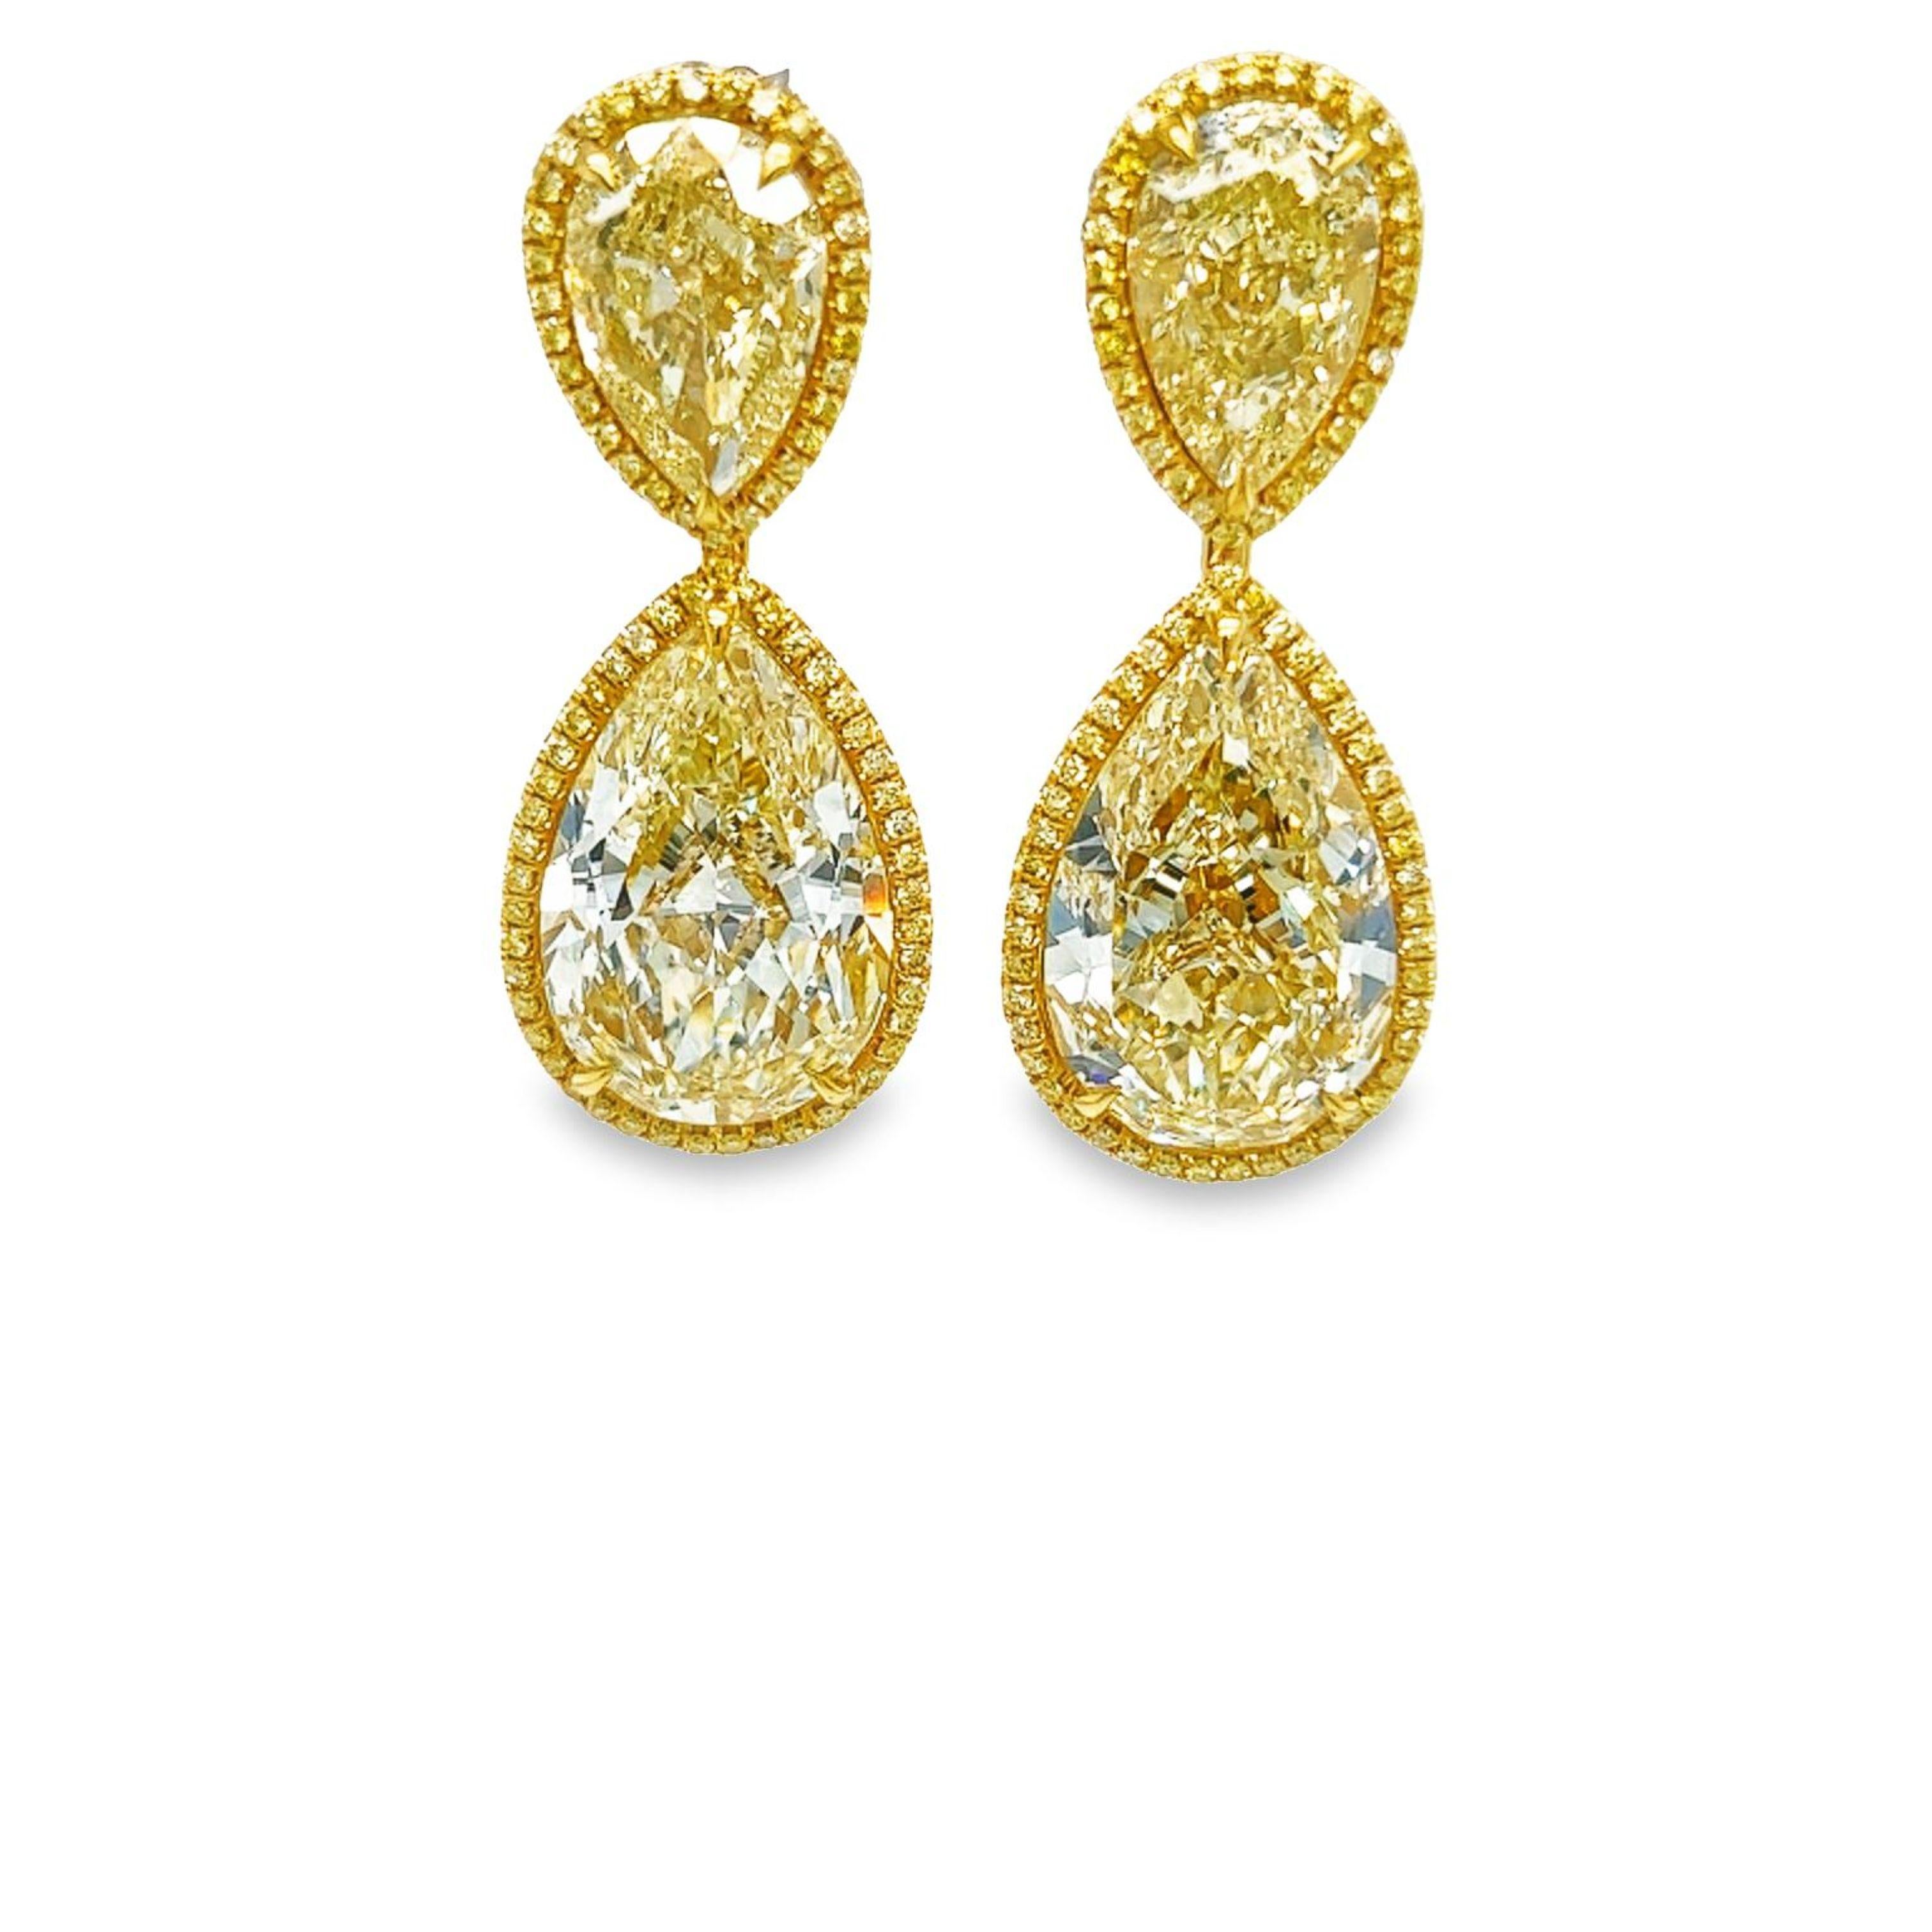 Préparez-vous pour une soirée avec ces boucles d'oreilles poire en diamant jaune VS - VVS. Ces magnifiques boucles d'oreilles légères sont serties dans de l'or jaune 18 carats et entourées d'un magnifique halo jaune d'un poids total de 0,82 carat,